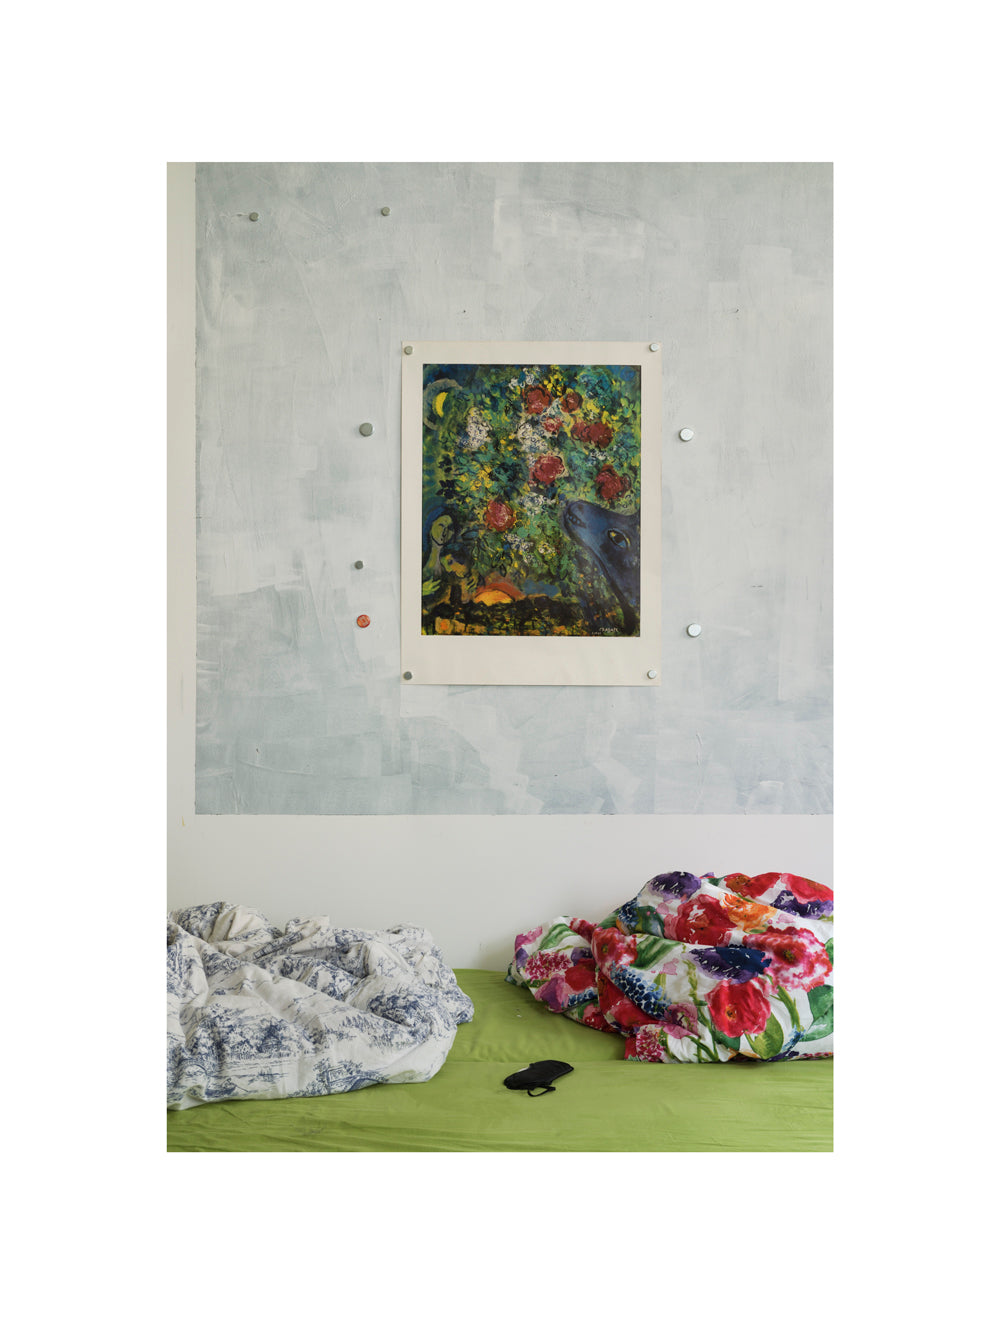 Ulrike Kolb, Limited Photography Editions Online, Chagall, Joachim Brohm, HGB Leipzig, Bayerischen Staatsgemäldesammlung, Loris Galerie, EIKON, Museum für Angewandte Kunst Gera, Museum Berggruen